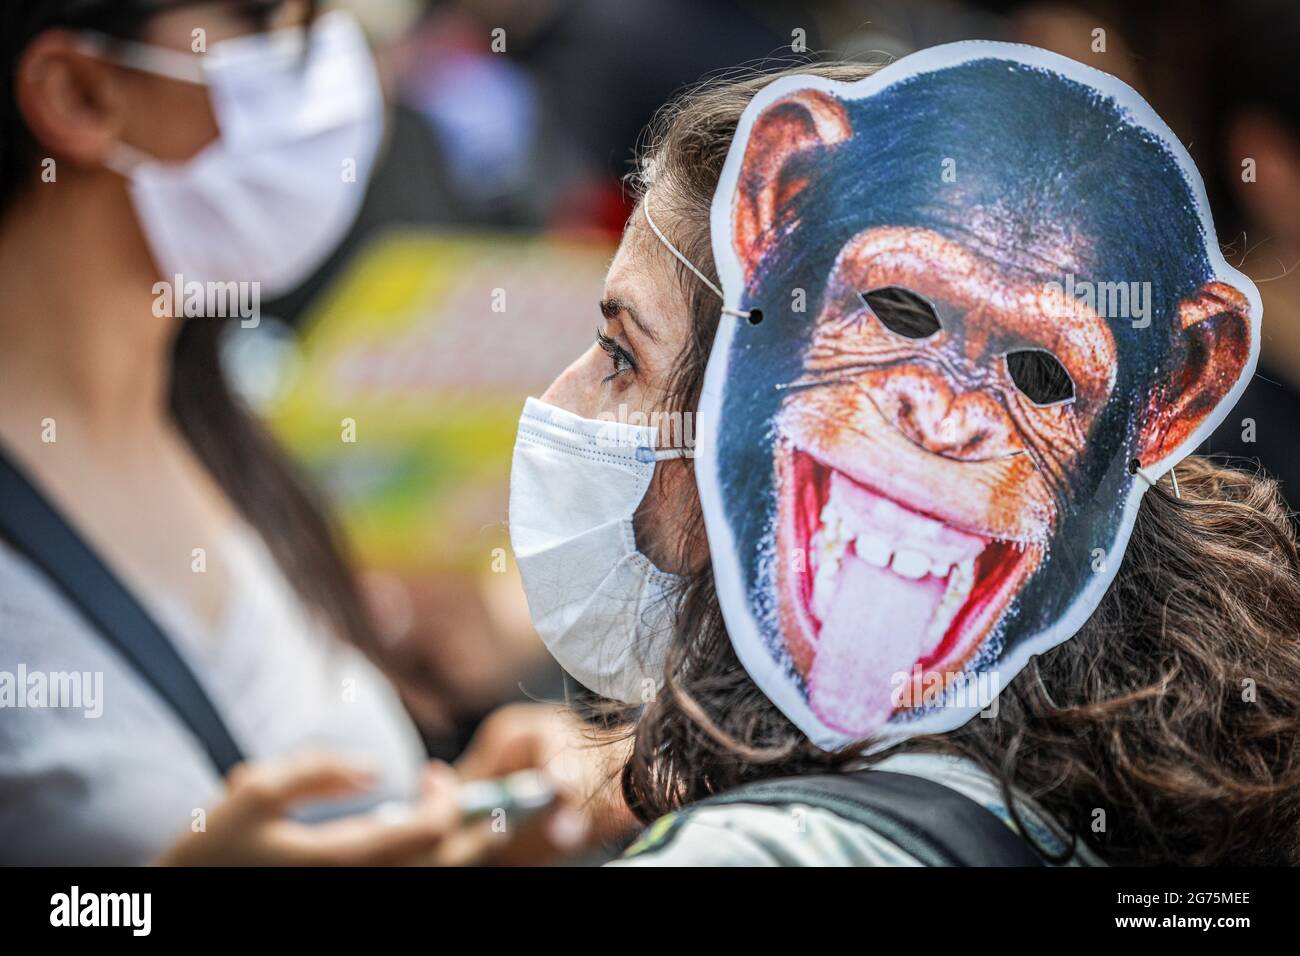 Un protester indossa una maschera di scimmia durante la dimostrazione. Gli  attivisti e le organizzazioni per i diritti degli animali hanno protestato  contro la legge sui diritti degli animali approvata alla Grande